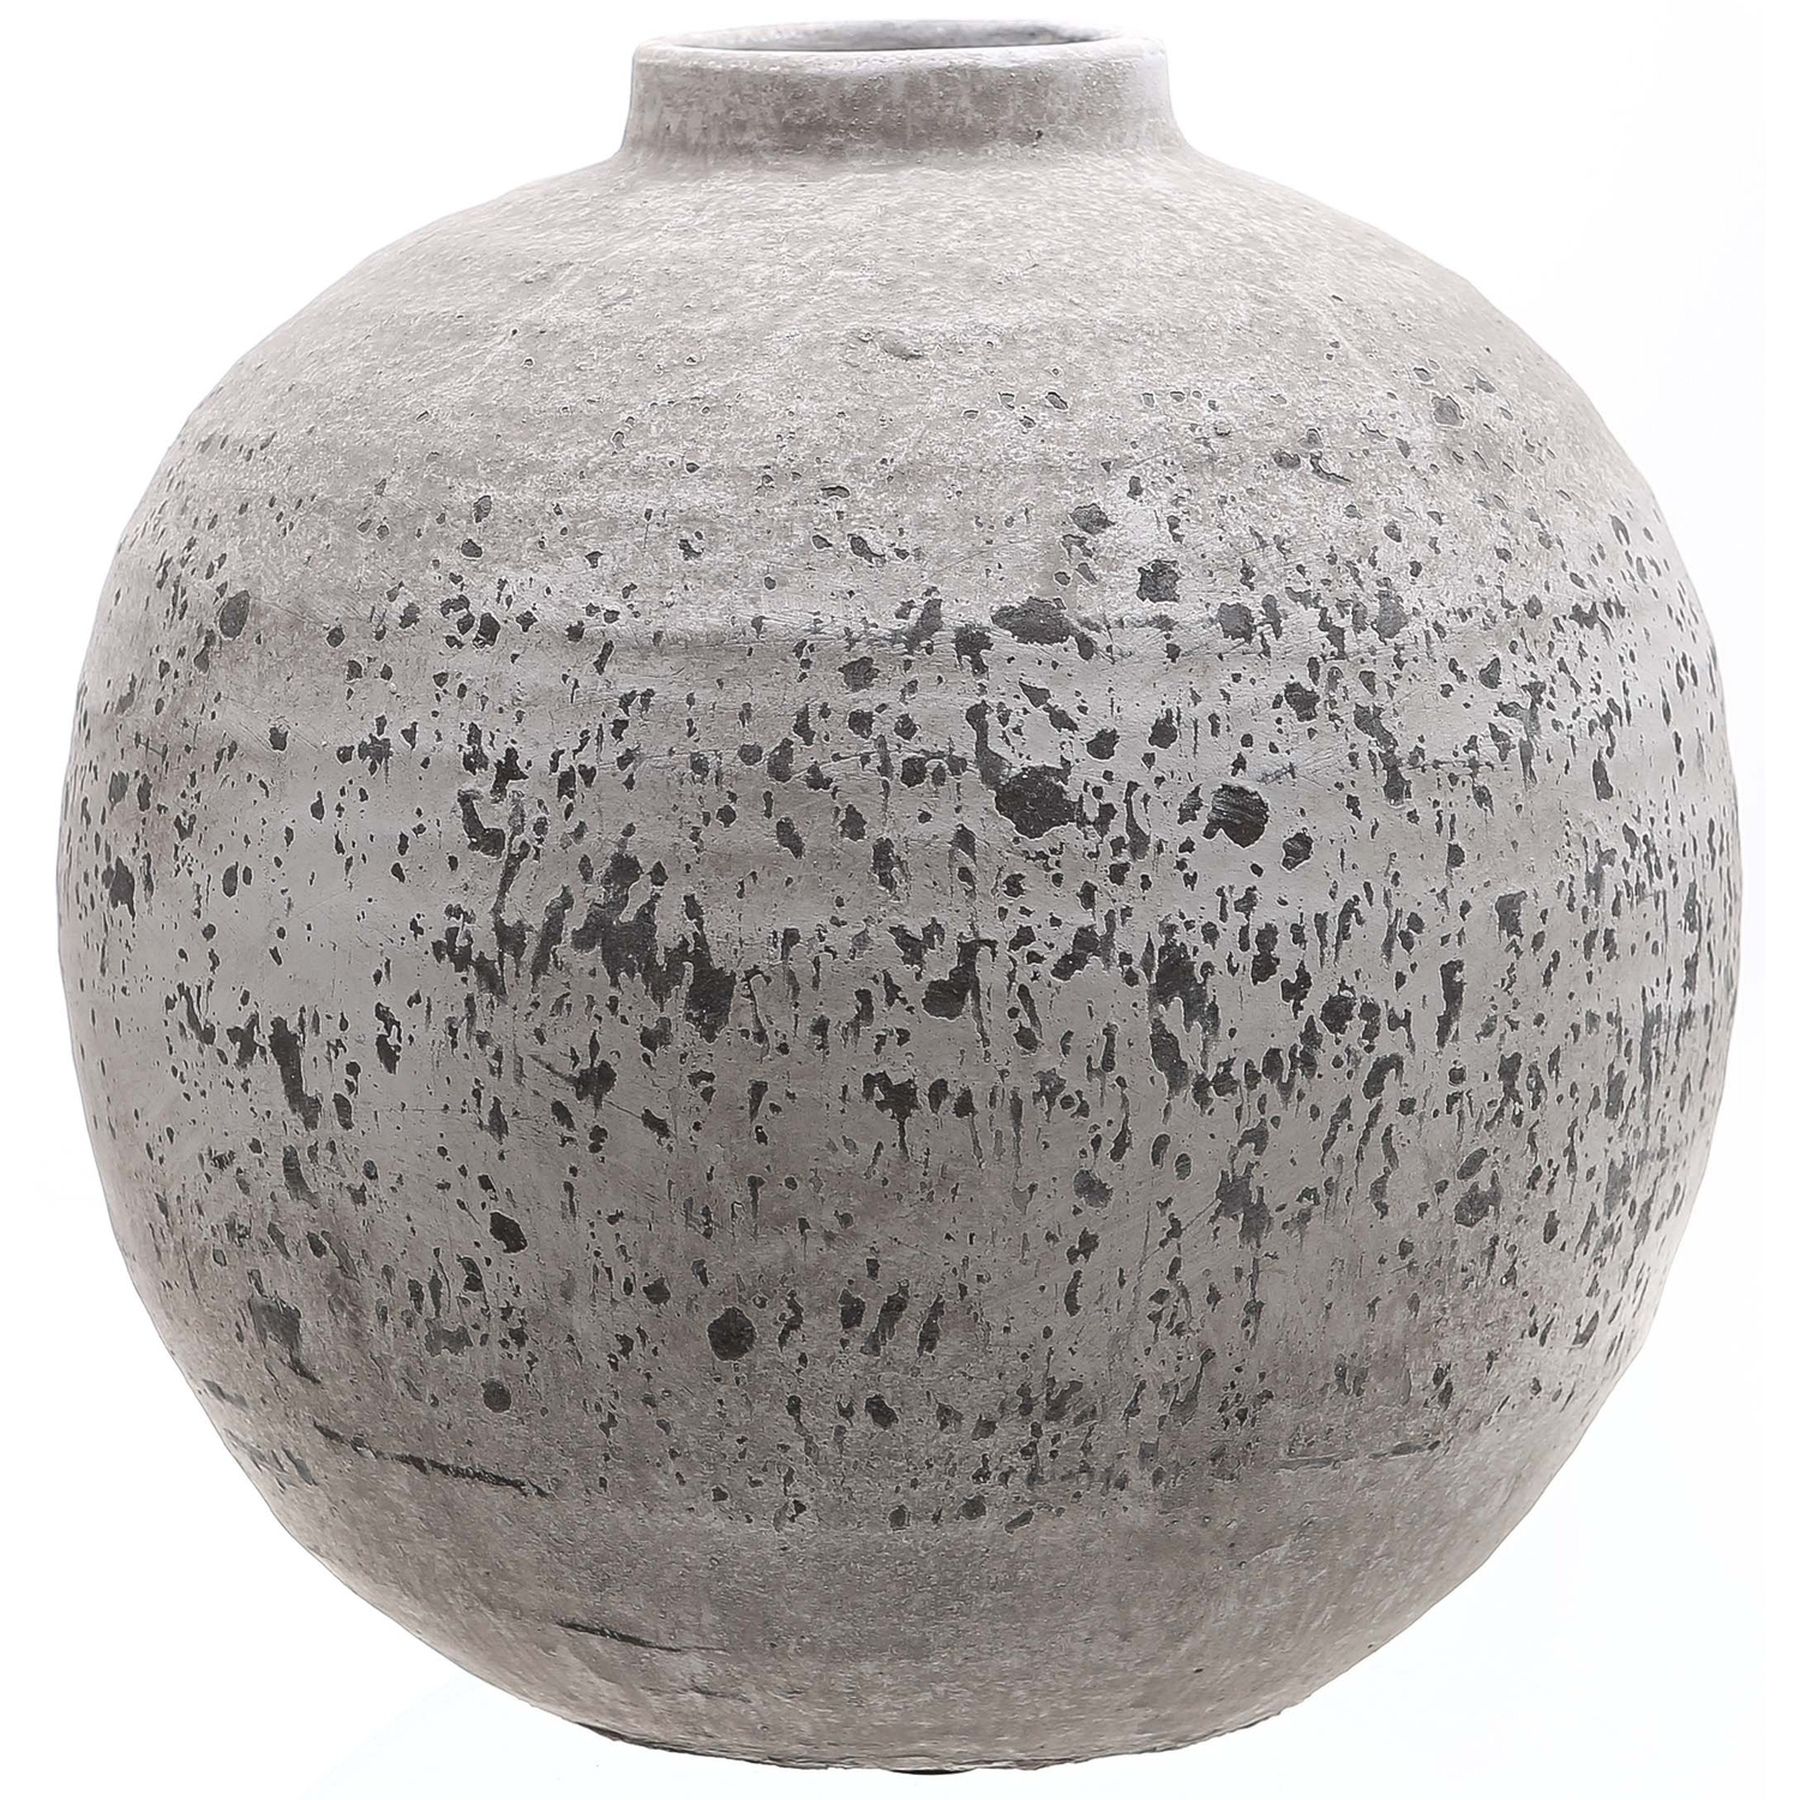 Tiber Stone Ceramic Vase - Image 1